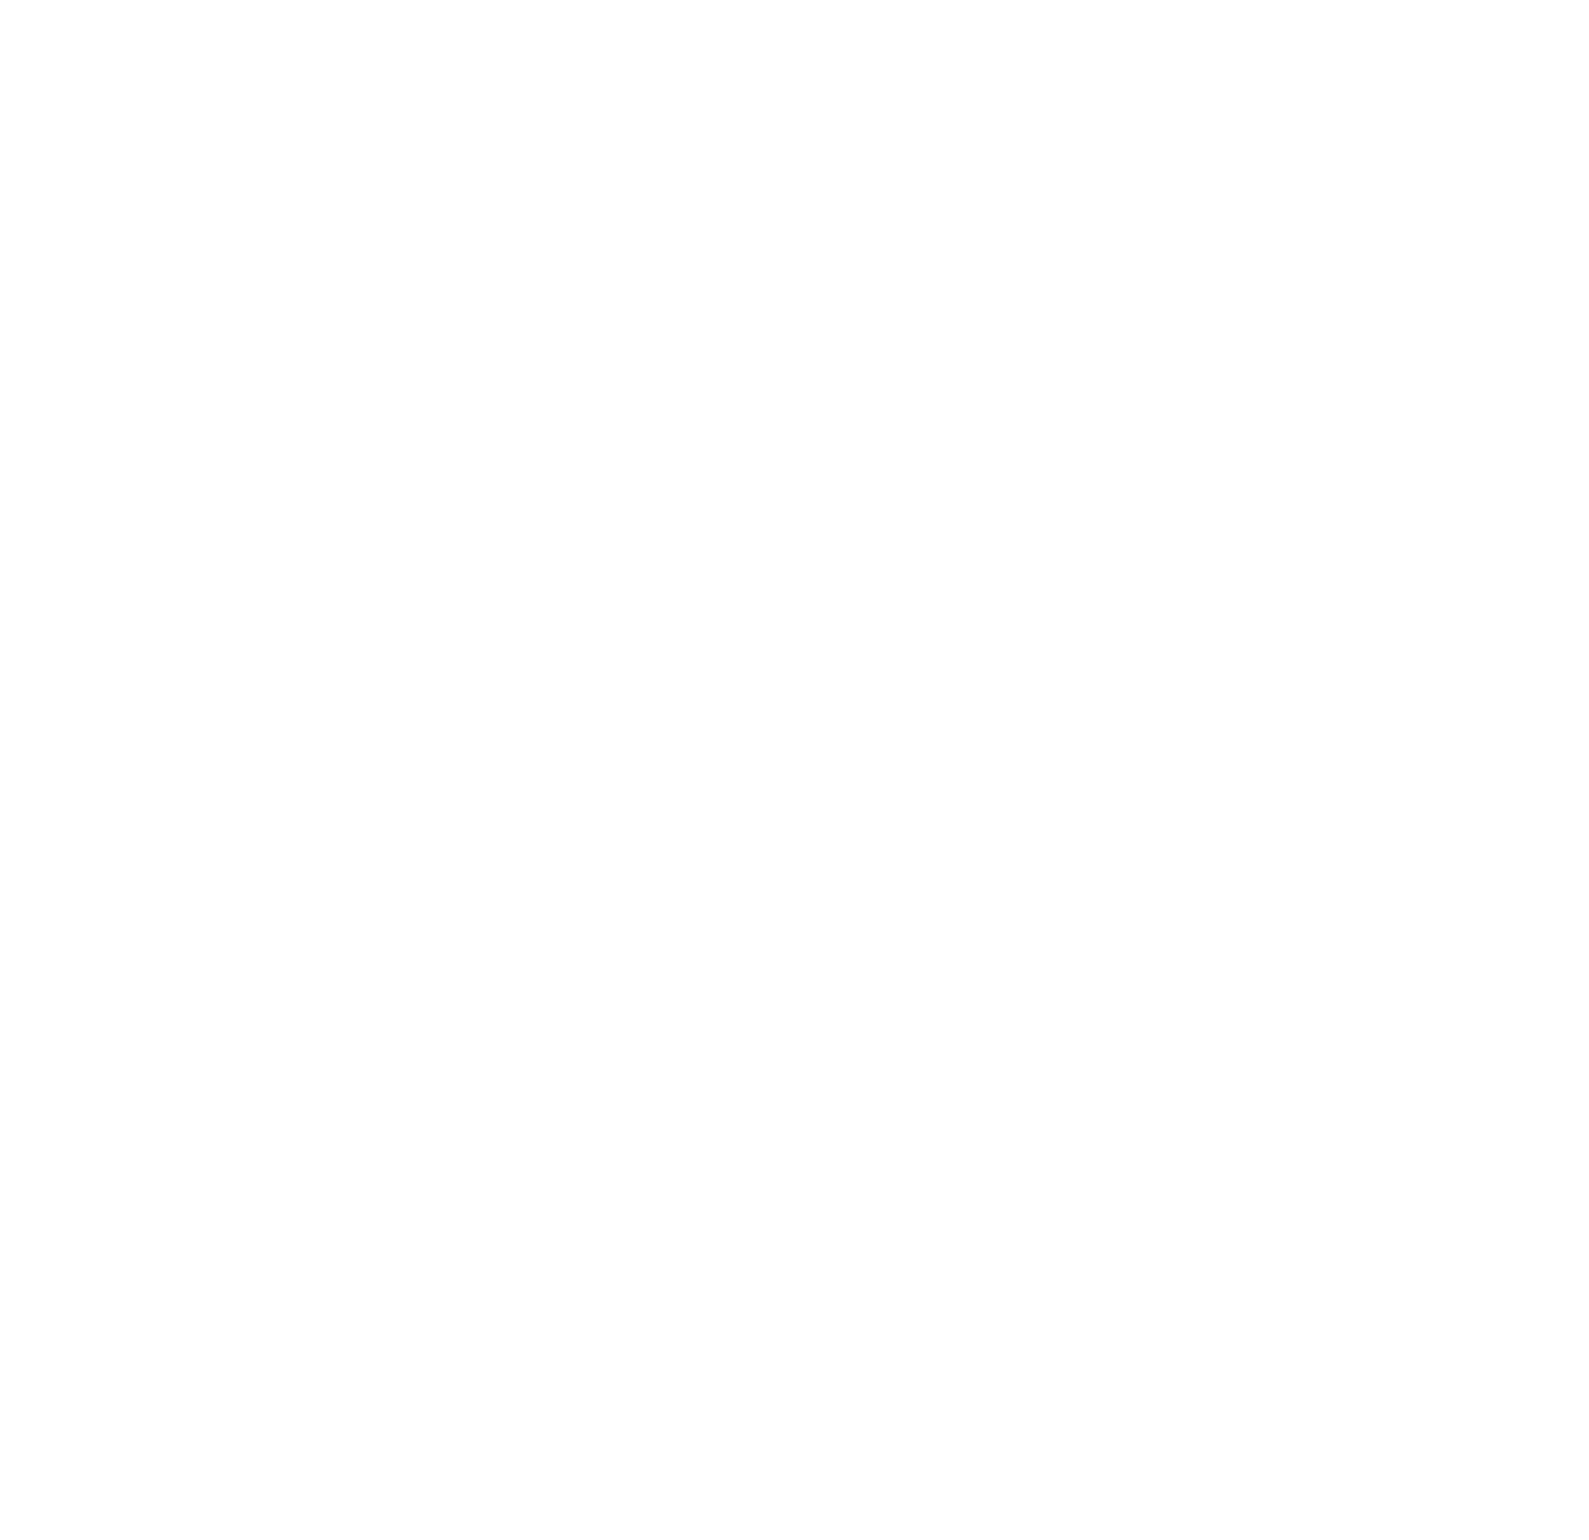 China Telecom logo for dark backgrounds (transparent PNG)